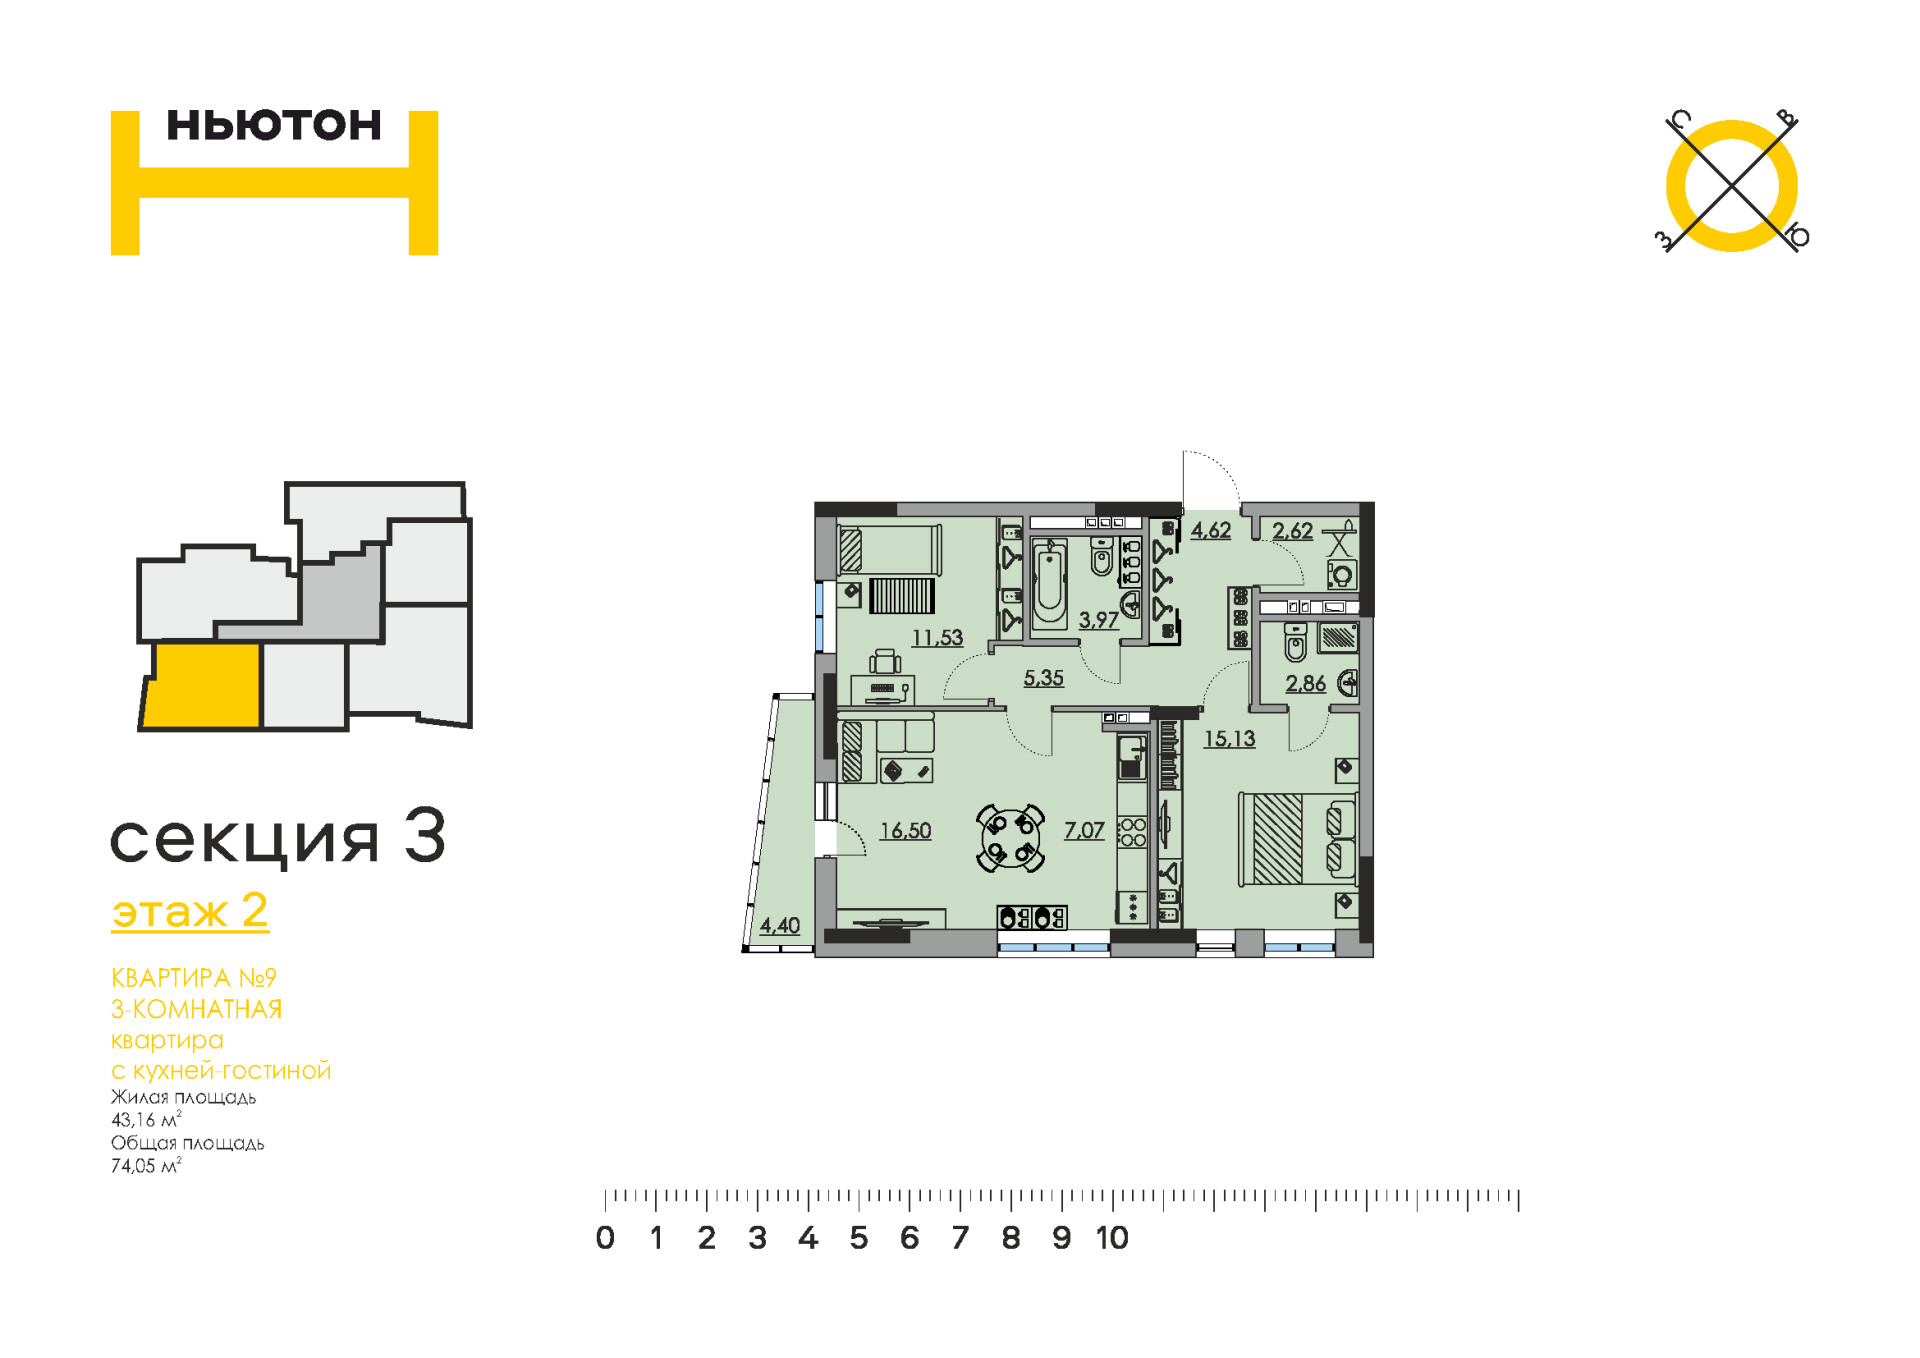 Ньютон, 2 и 3 секции (5 этажей)